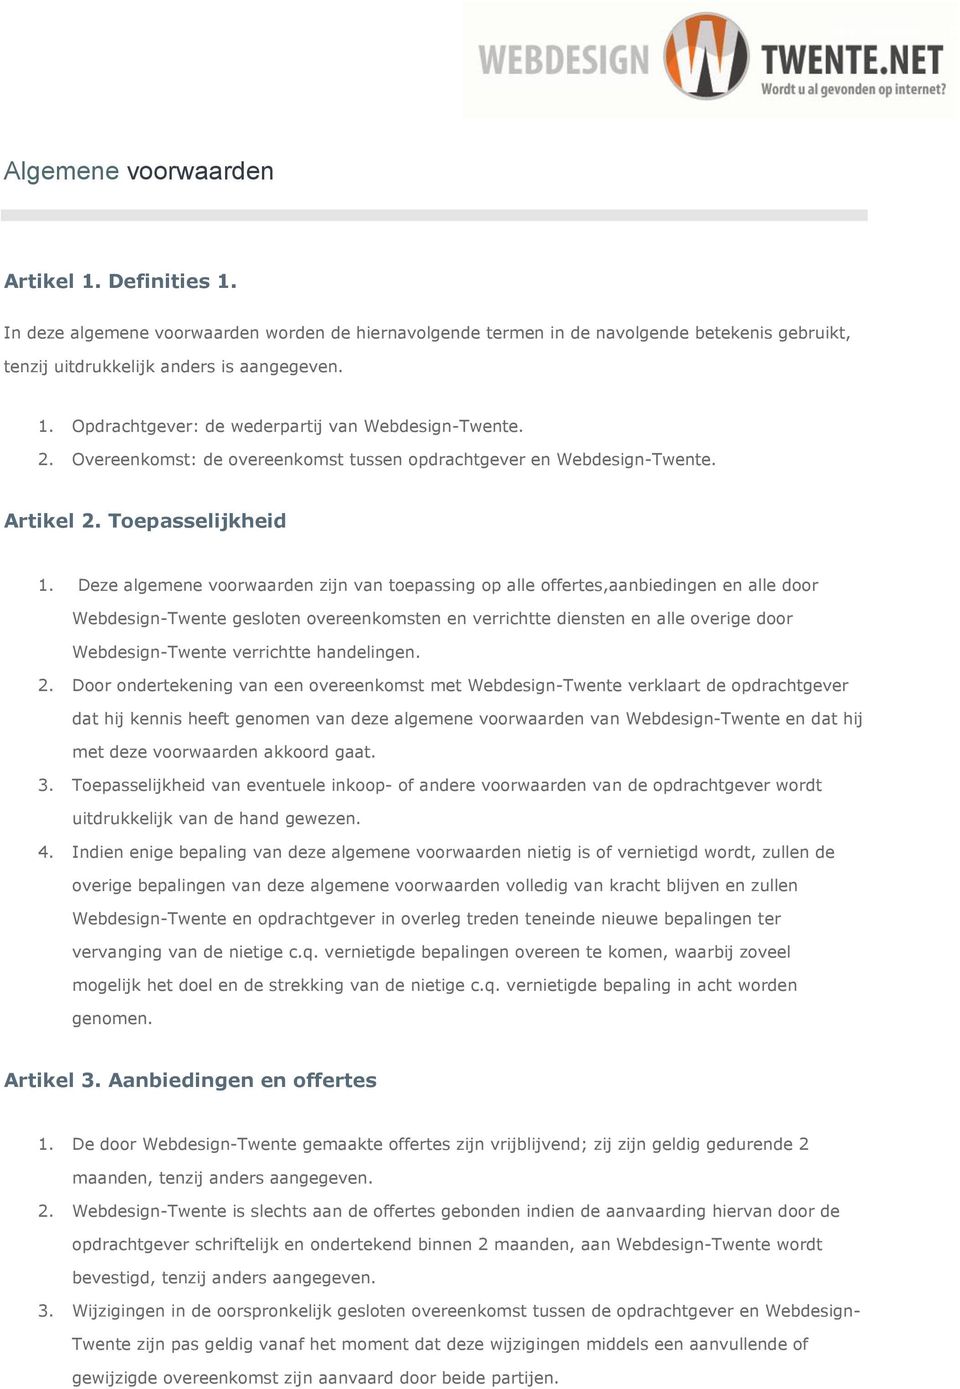 Deze algemene voorwaarden zijn van toepassing op alle offertes,aanbiedingen en alle door Webdesign-Twente gesloten overeenkomsten en verrichtte diensten en alle overige door Webdesign-Twente